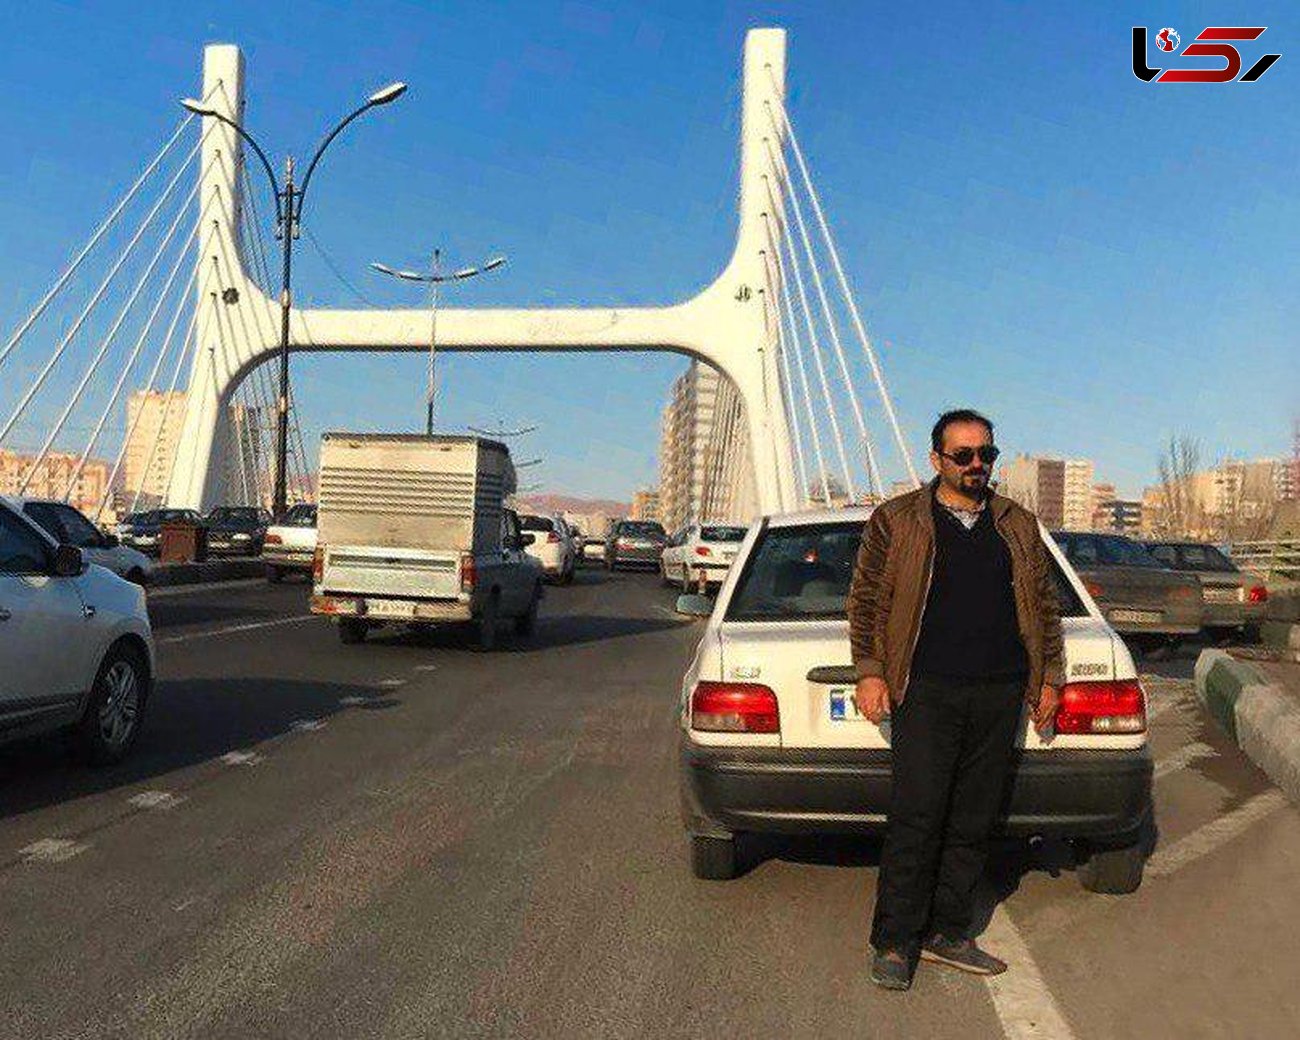 راننده تاکسی اینترنتی تبریز جنجال برانگیز شد / او برای مسافر زن چه کاری انجام داد؟ + عکس 